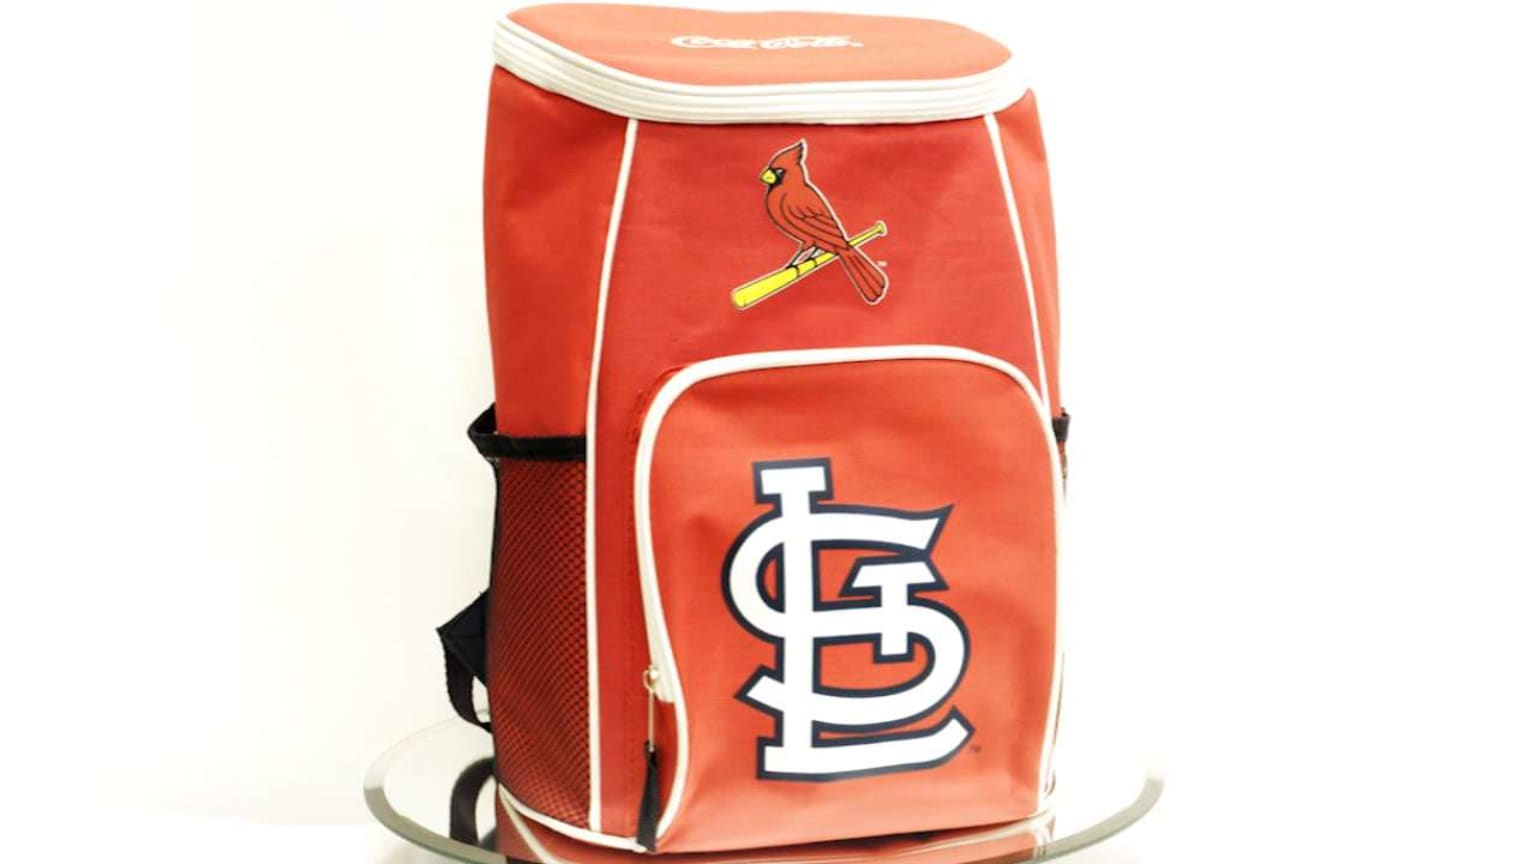 Dodger Stadium Backpack Giveaway 